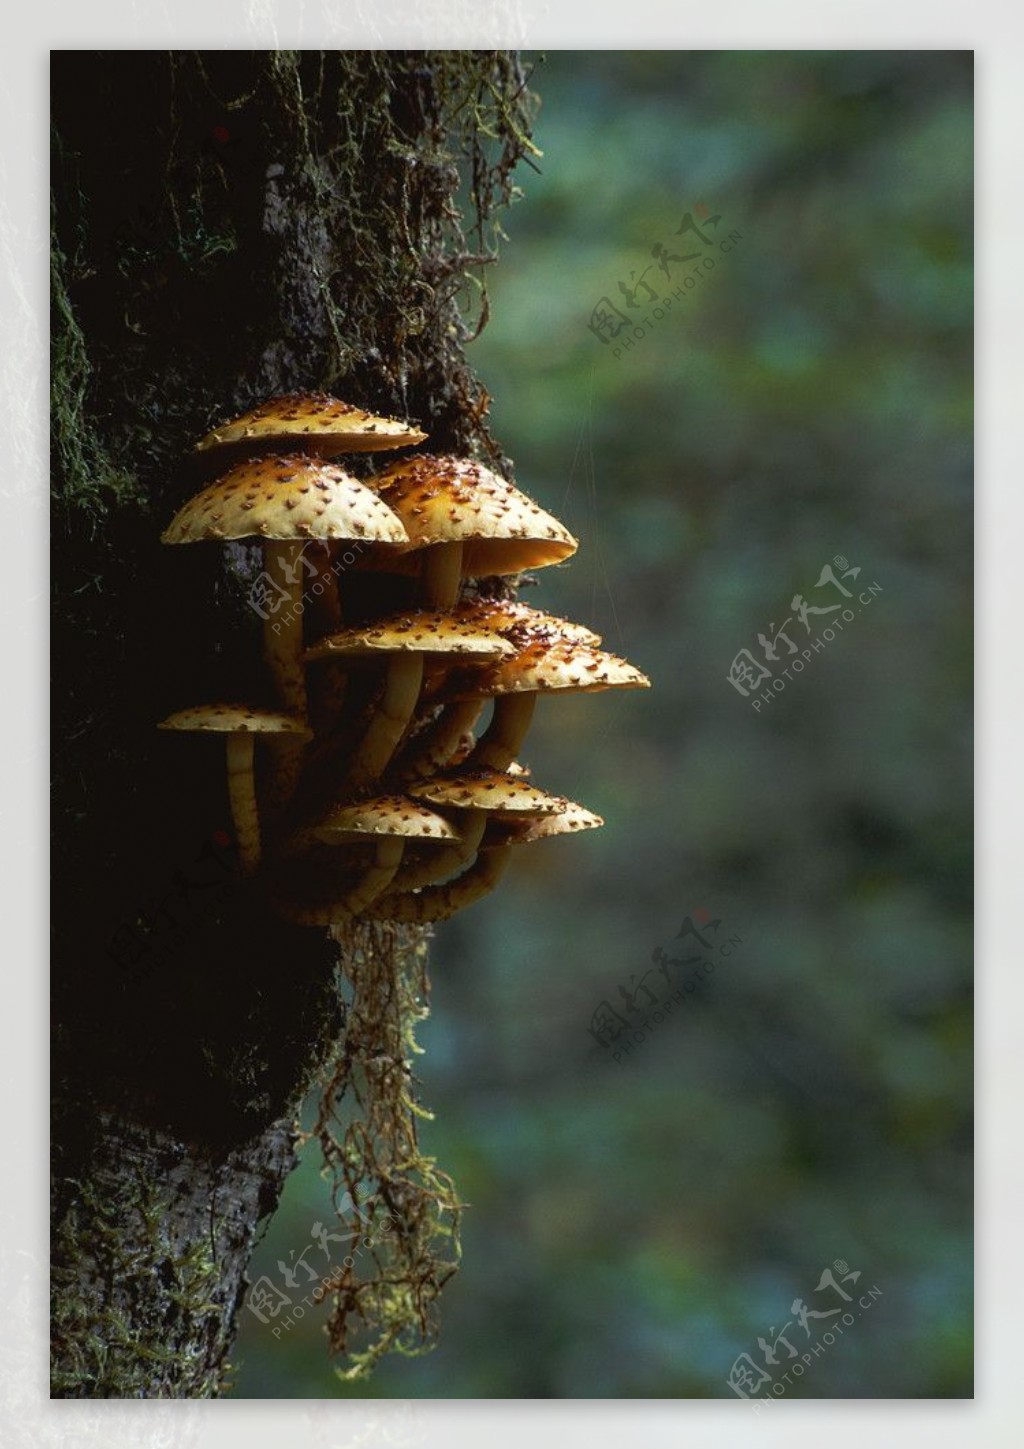 真菌图片